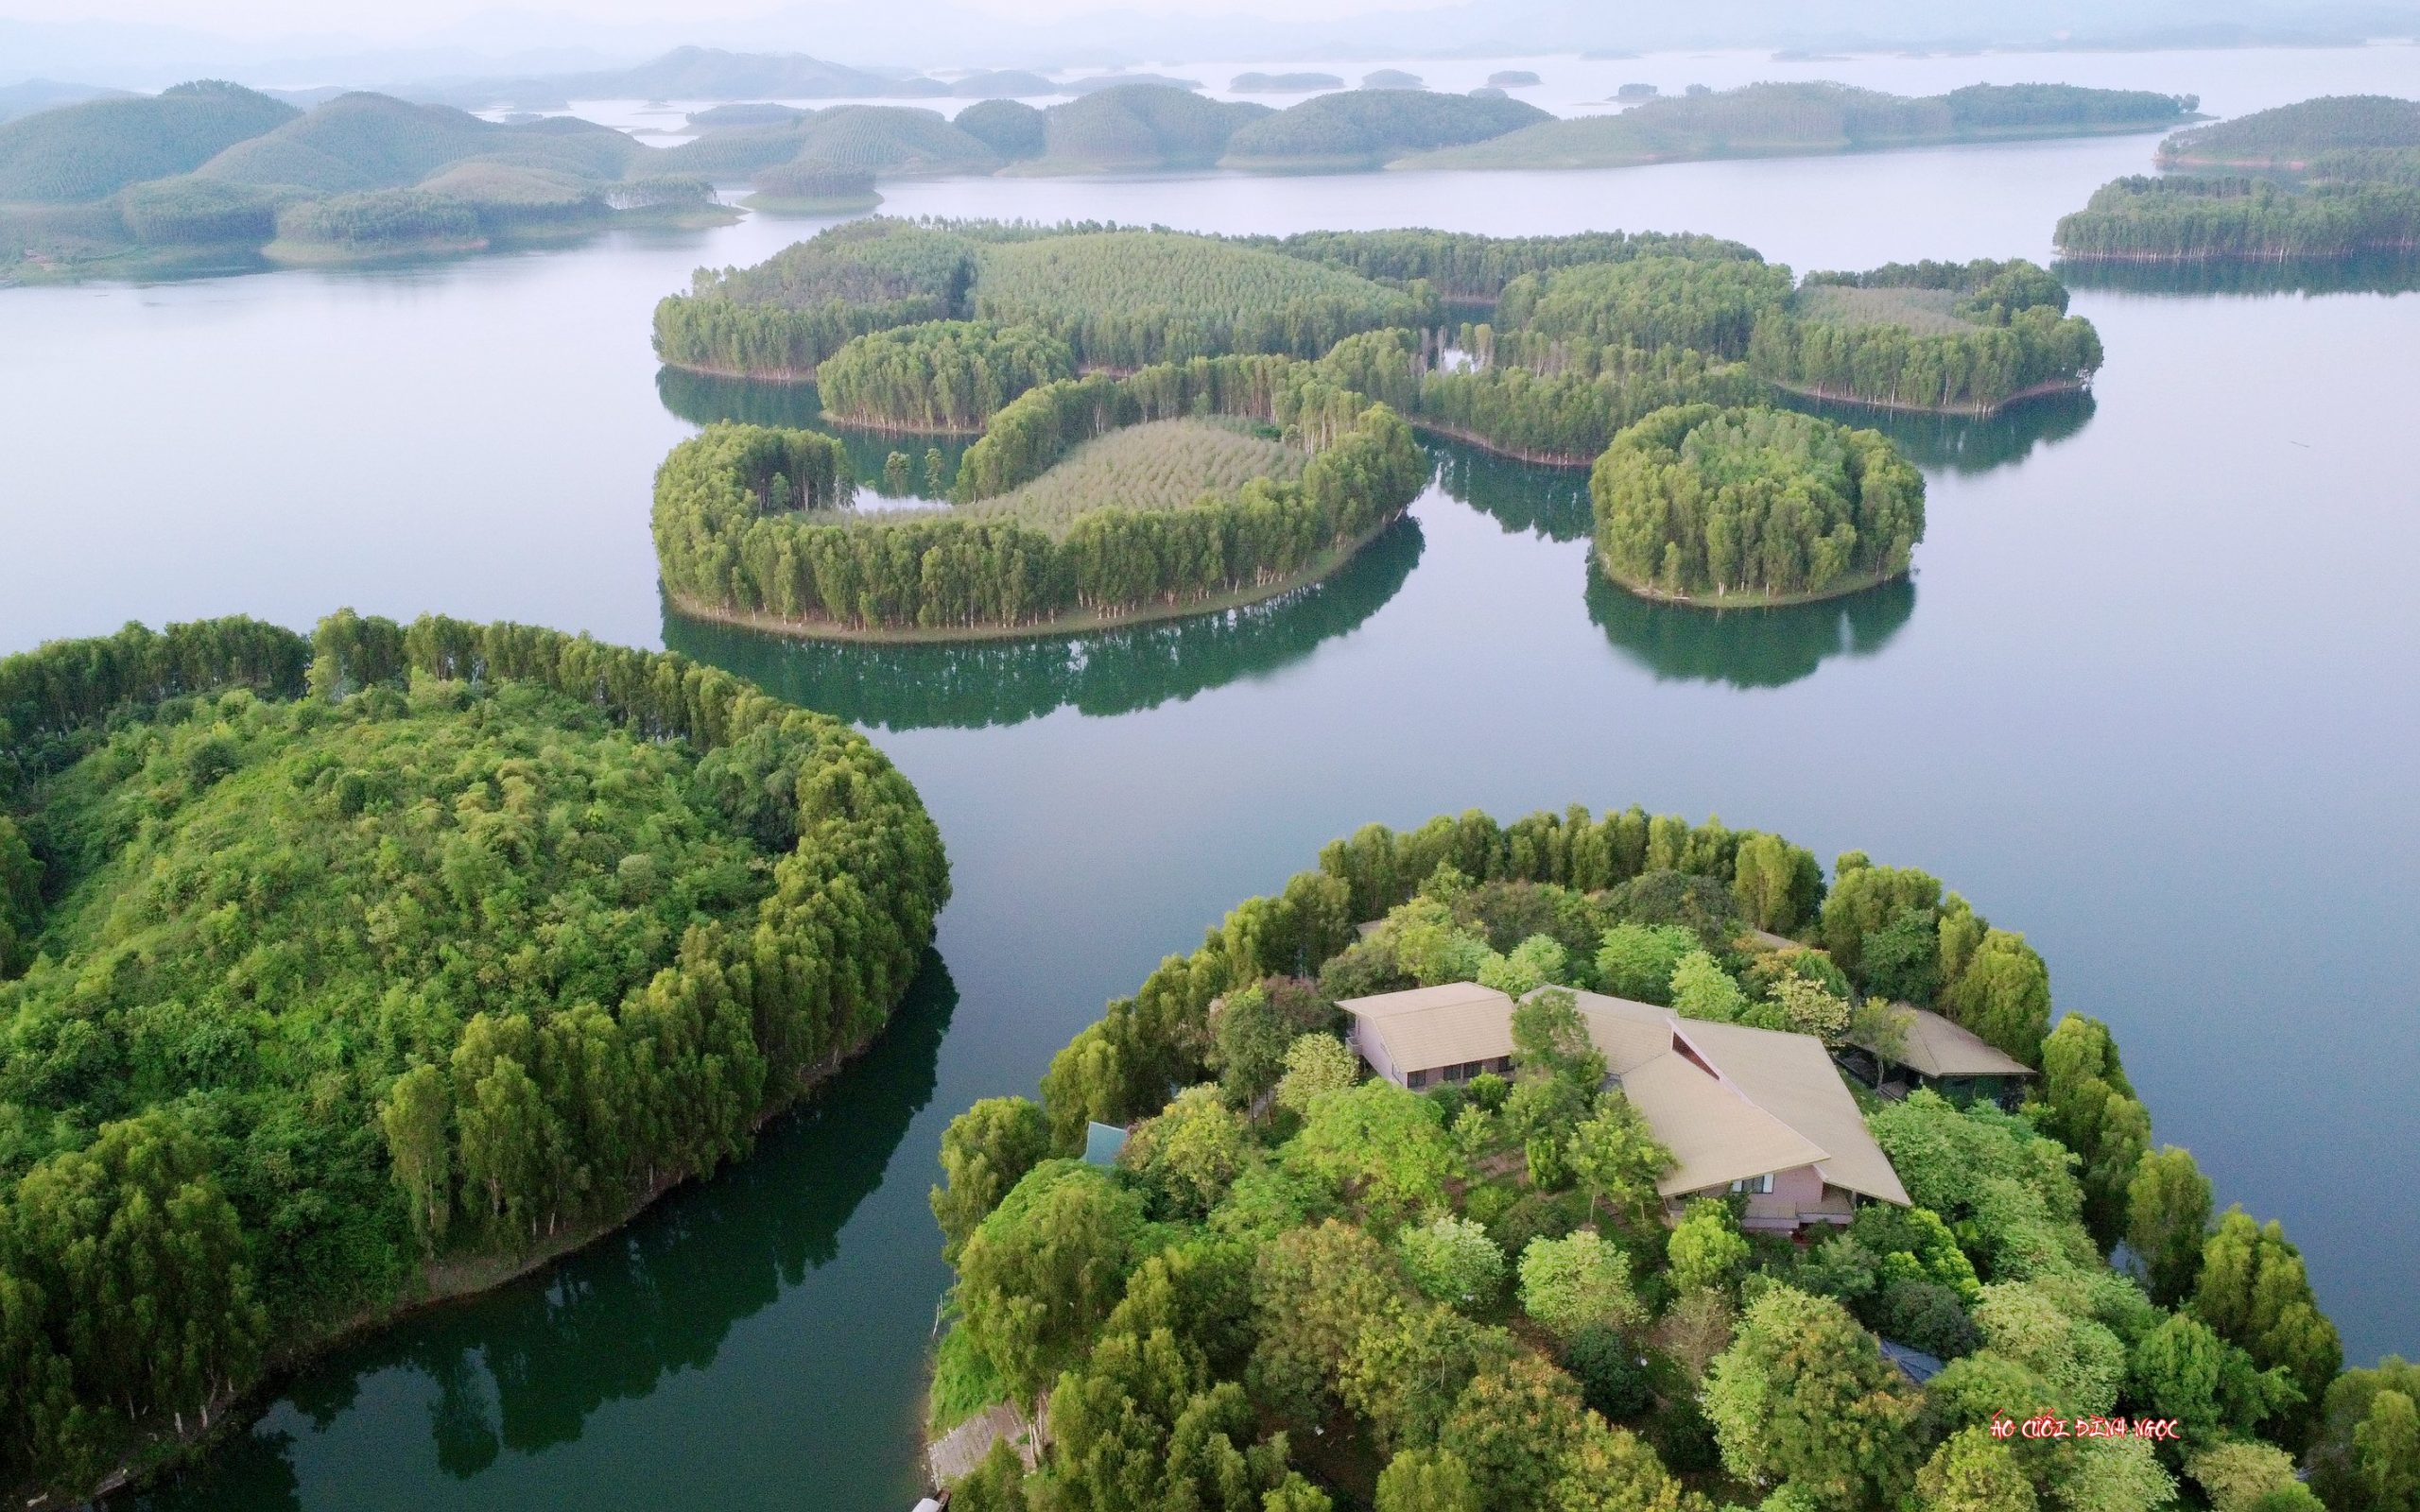 Hồ Thác Bà - Di tích lịch sử danh thắng cấp quốc gia